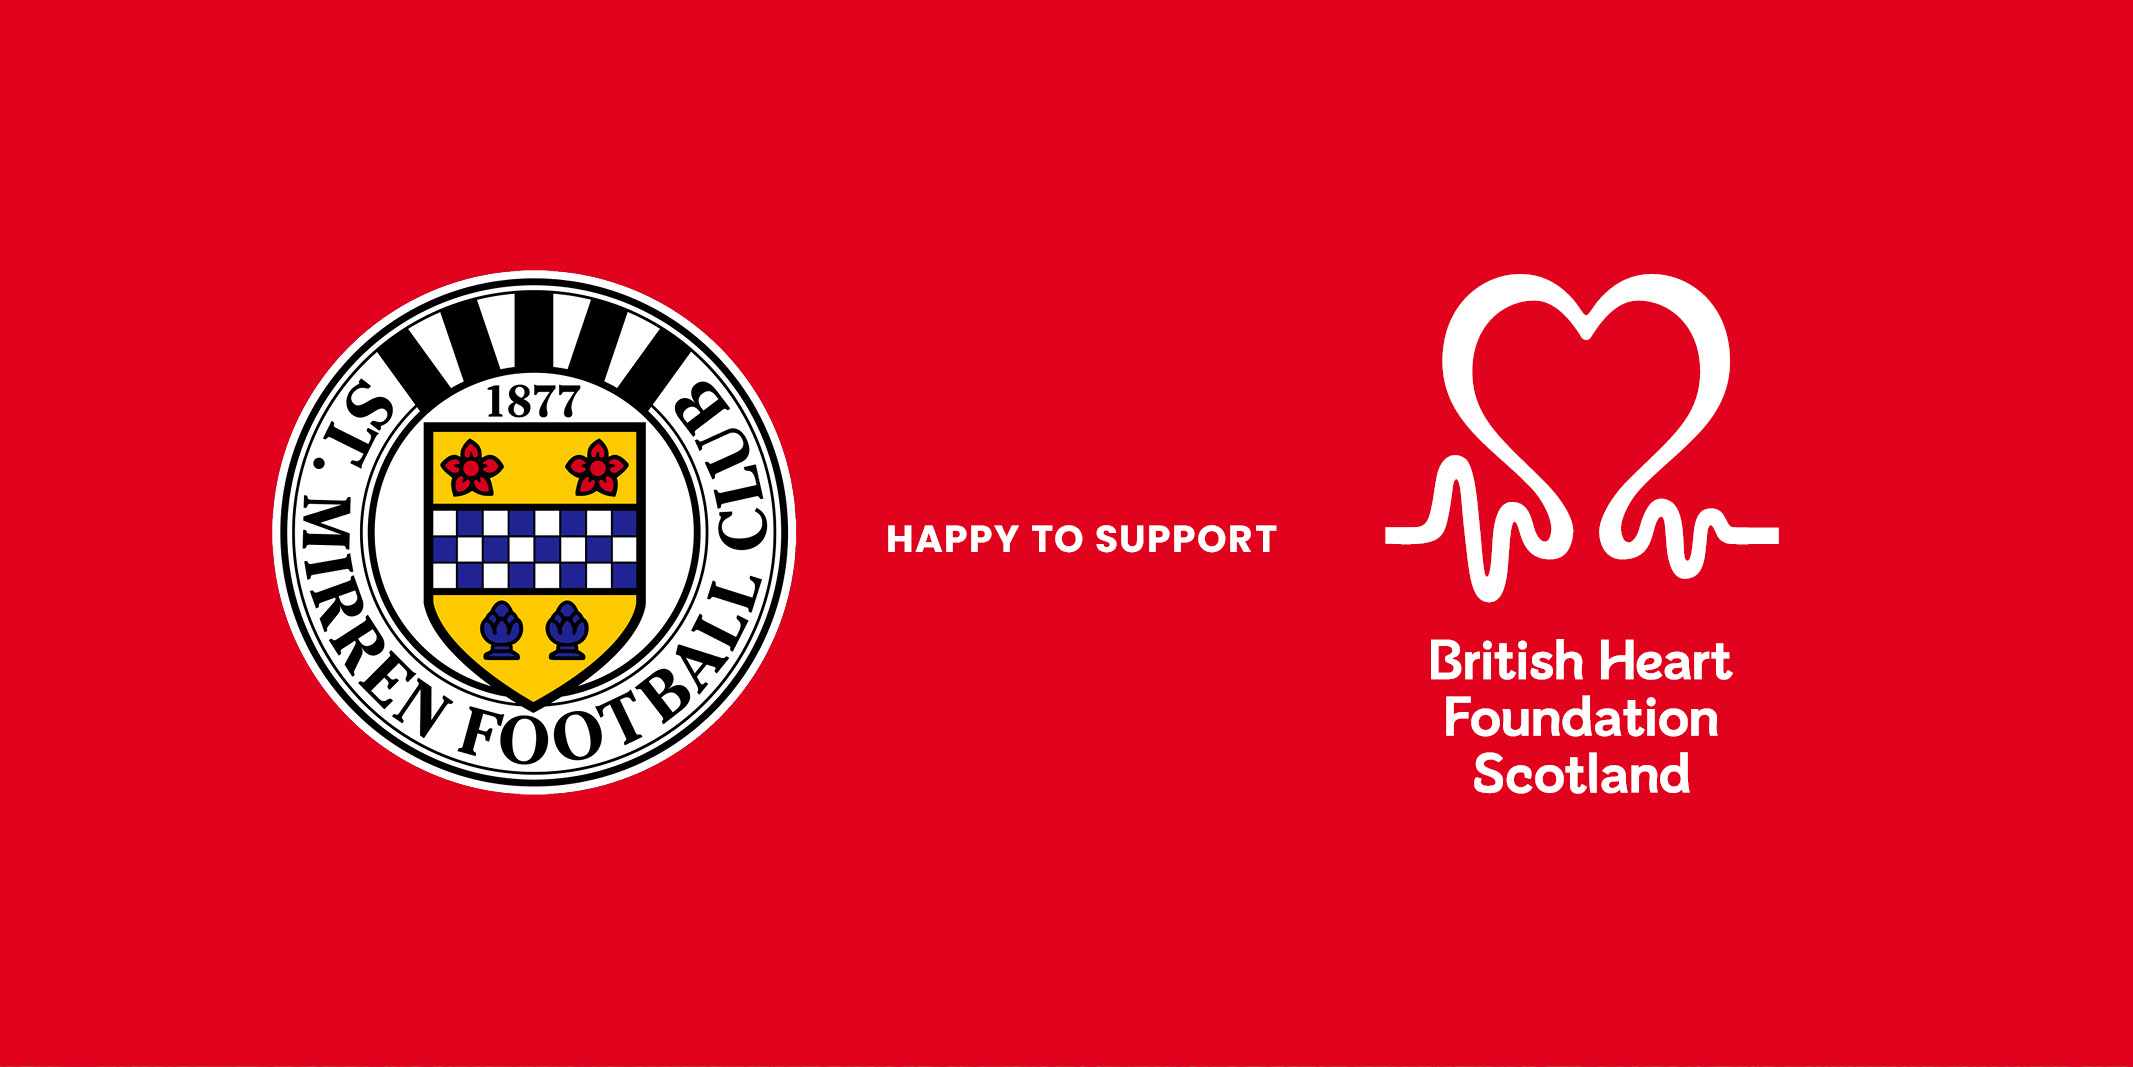 St Mirren supporting British Heart Foundation